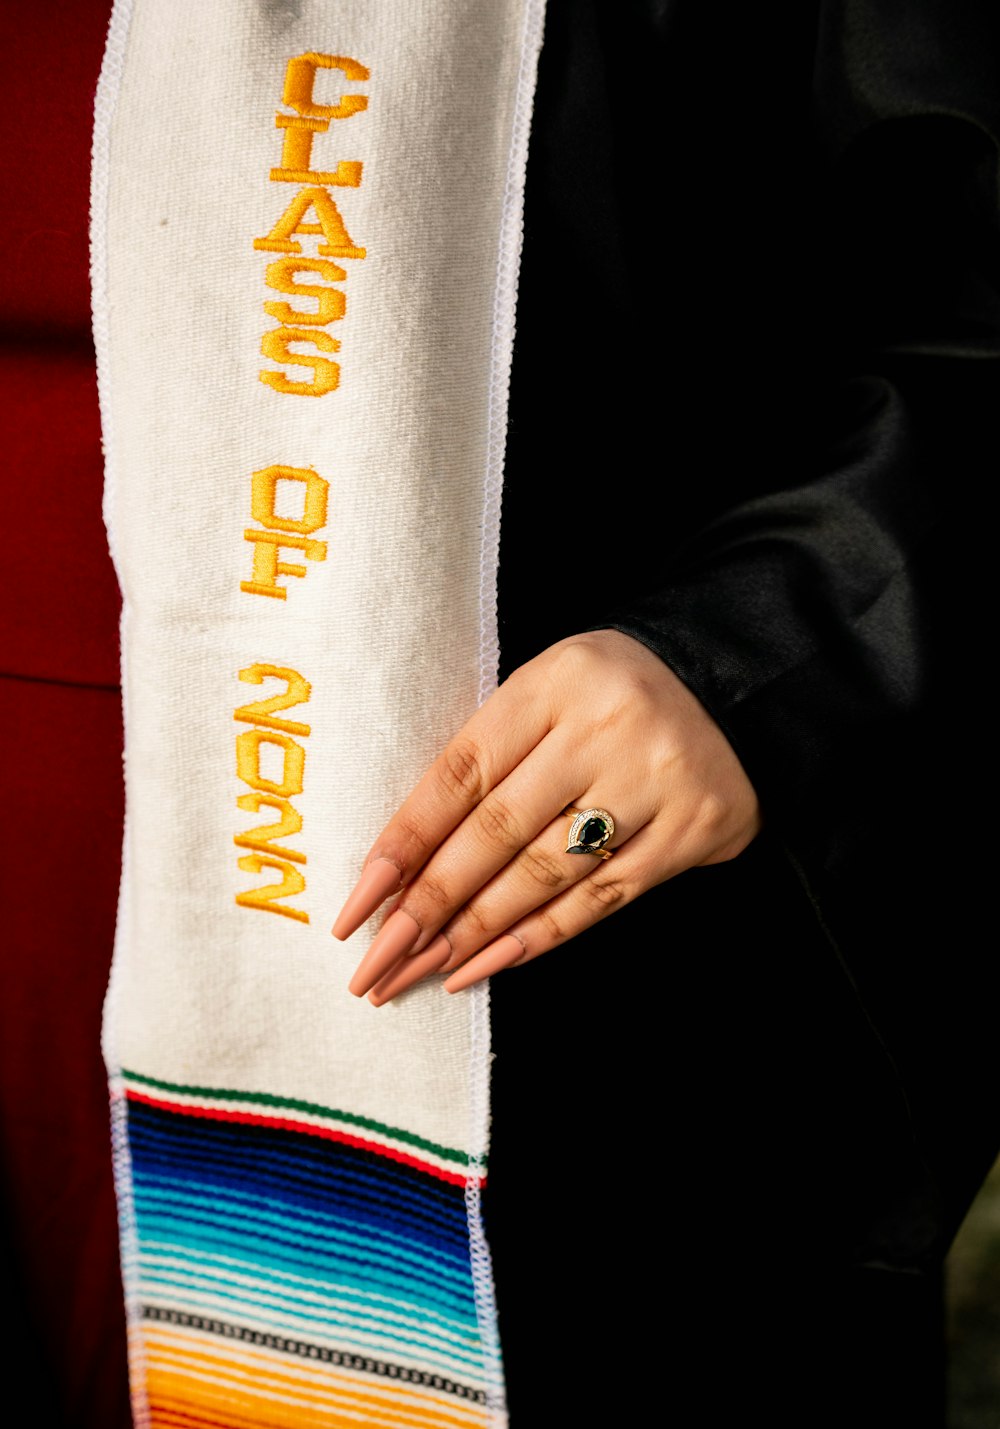 Une femme tient un foulard avec les mots Changement d’année dessus